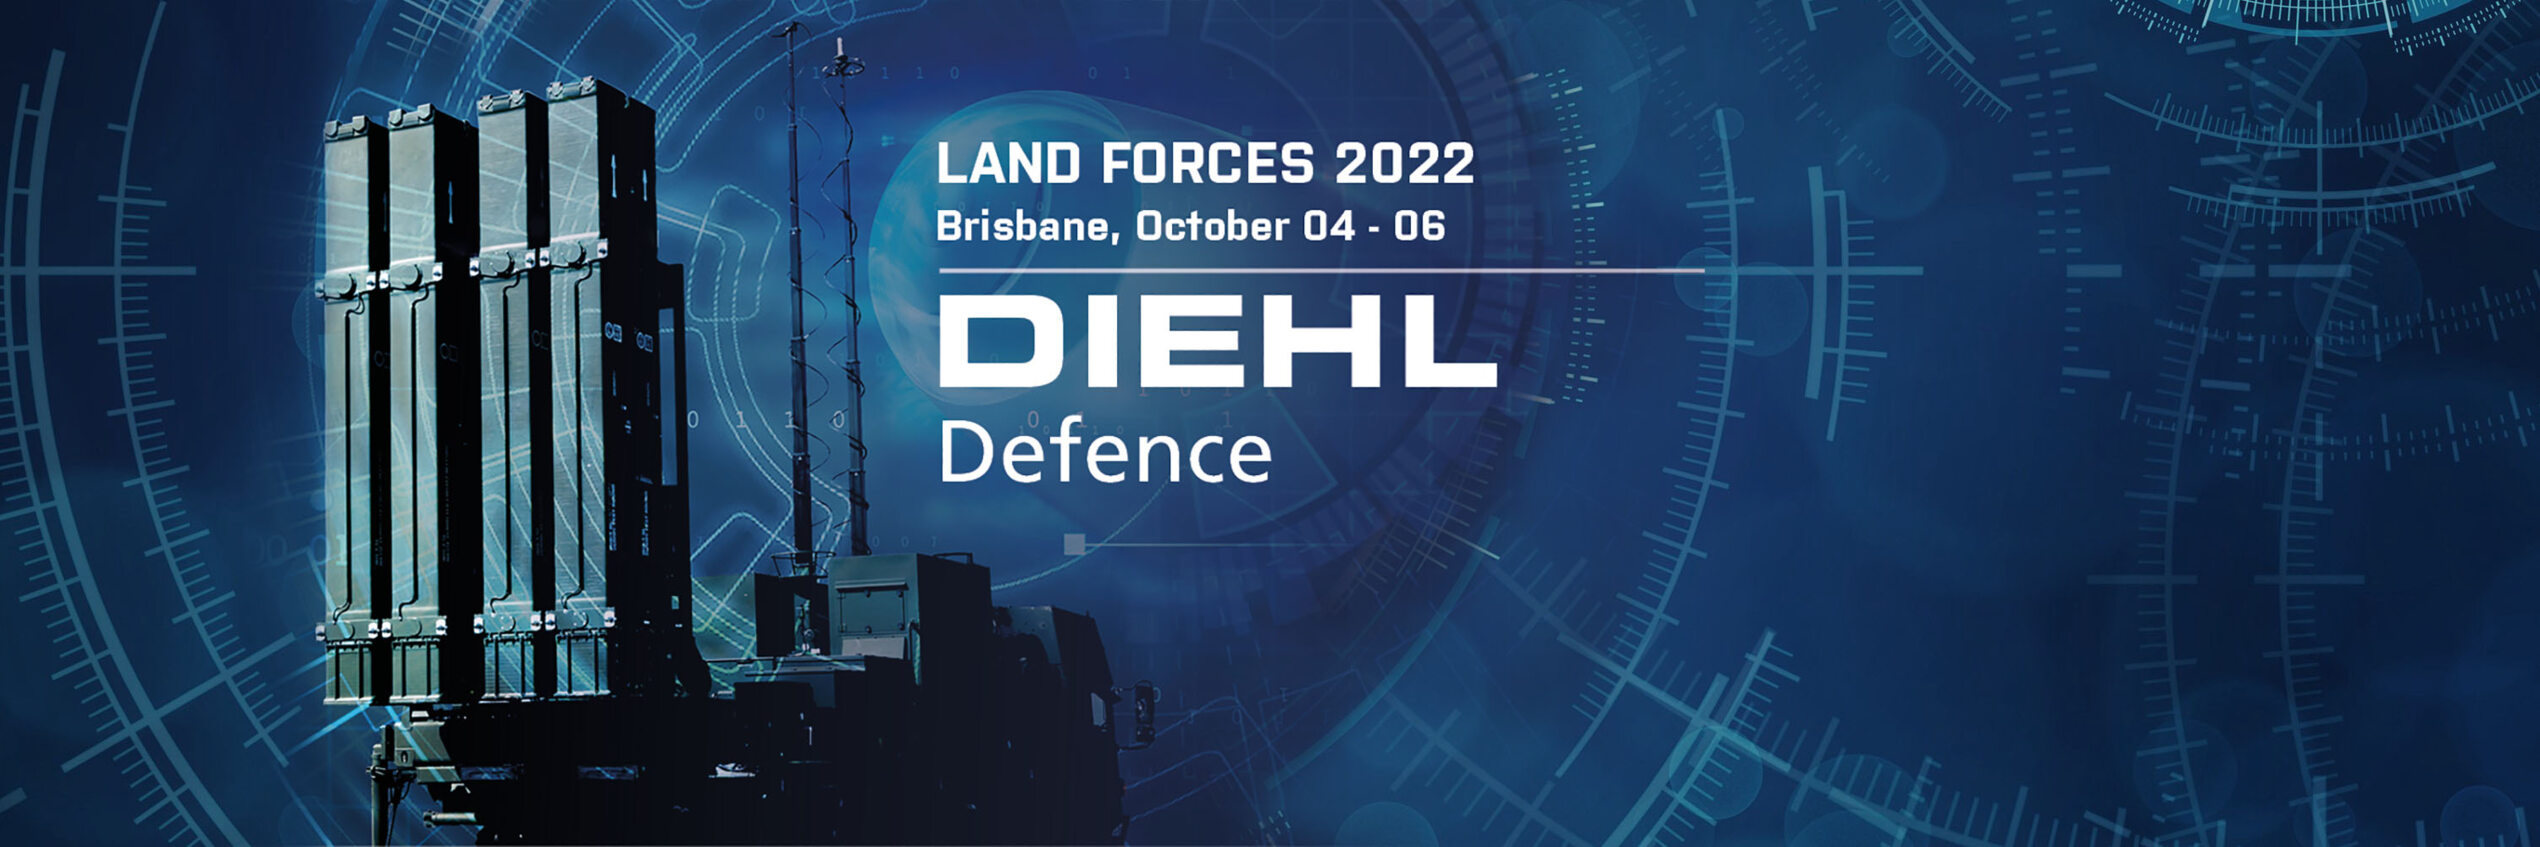 Diehl Defence bei Land Forces 2022 in Brisbane, Australien